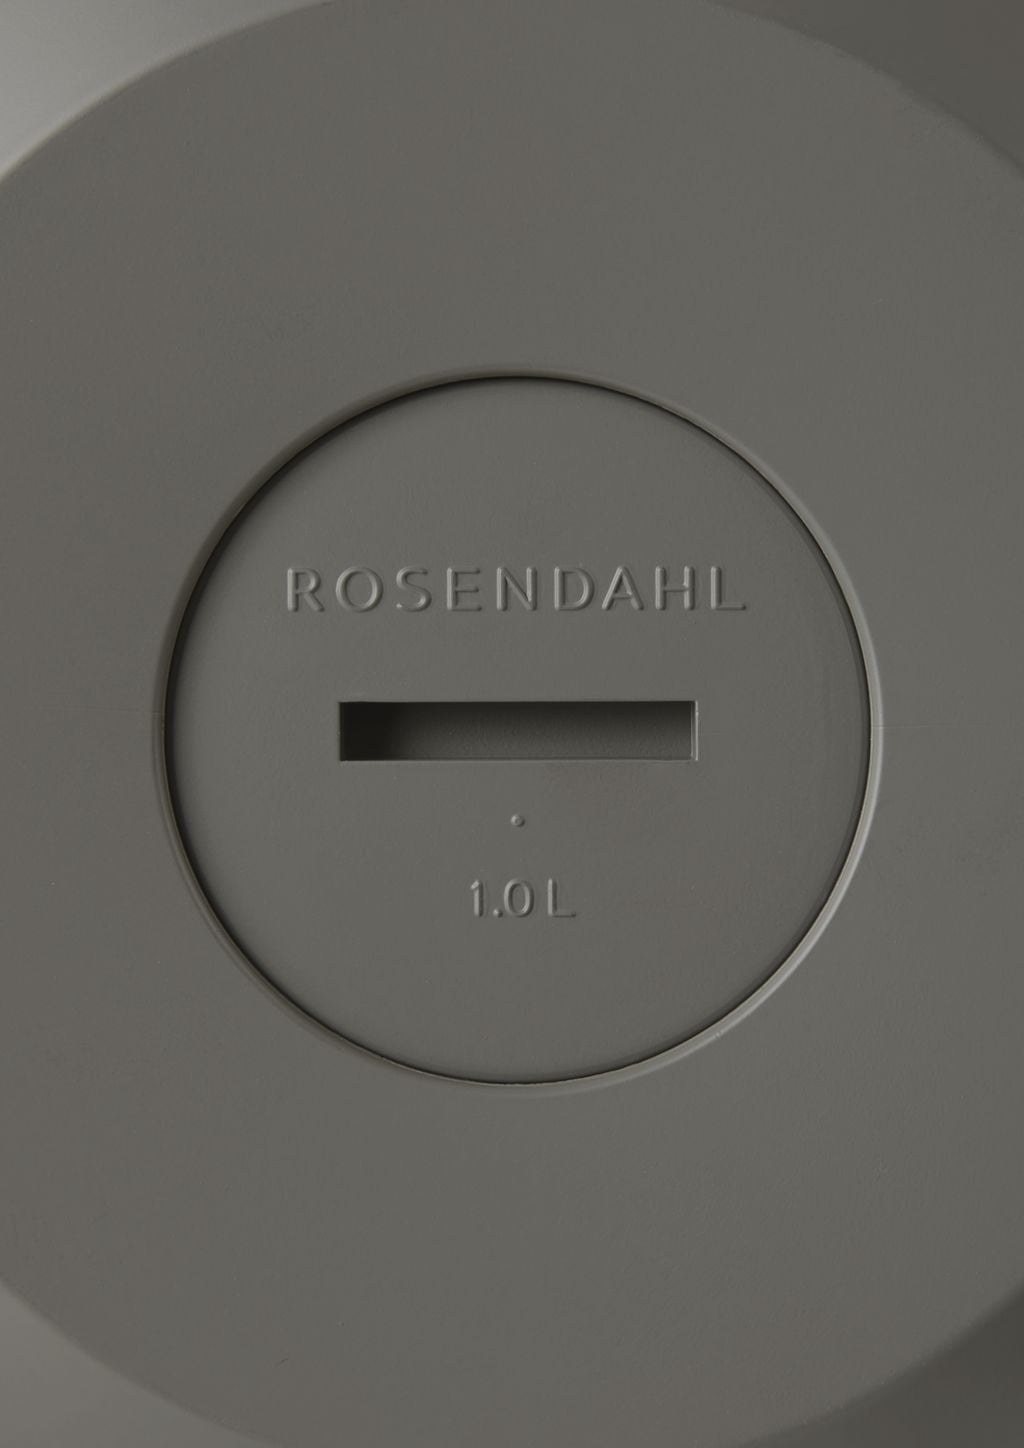 Rosendahl GC vacuümkruik 1,0 L, as